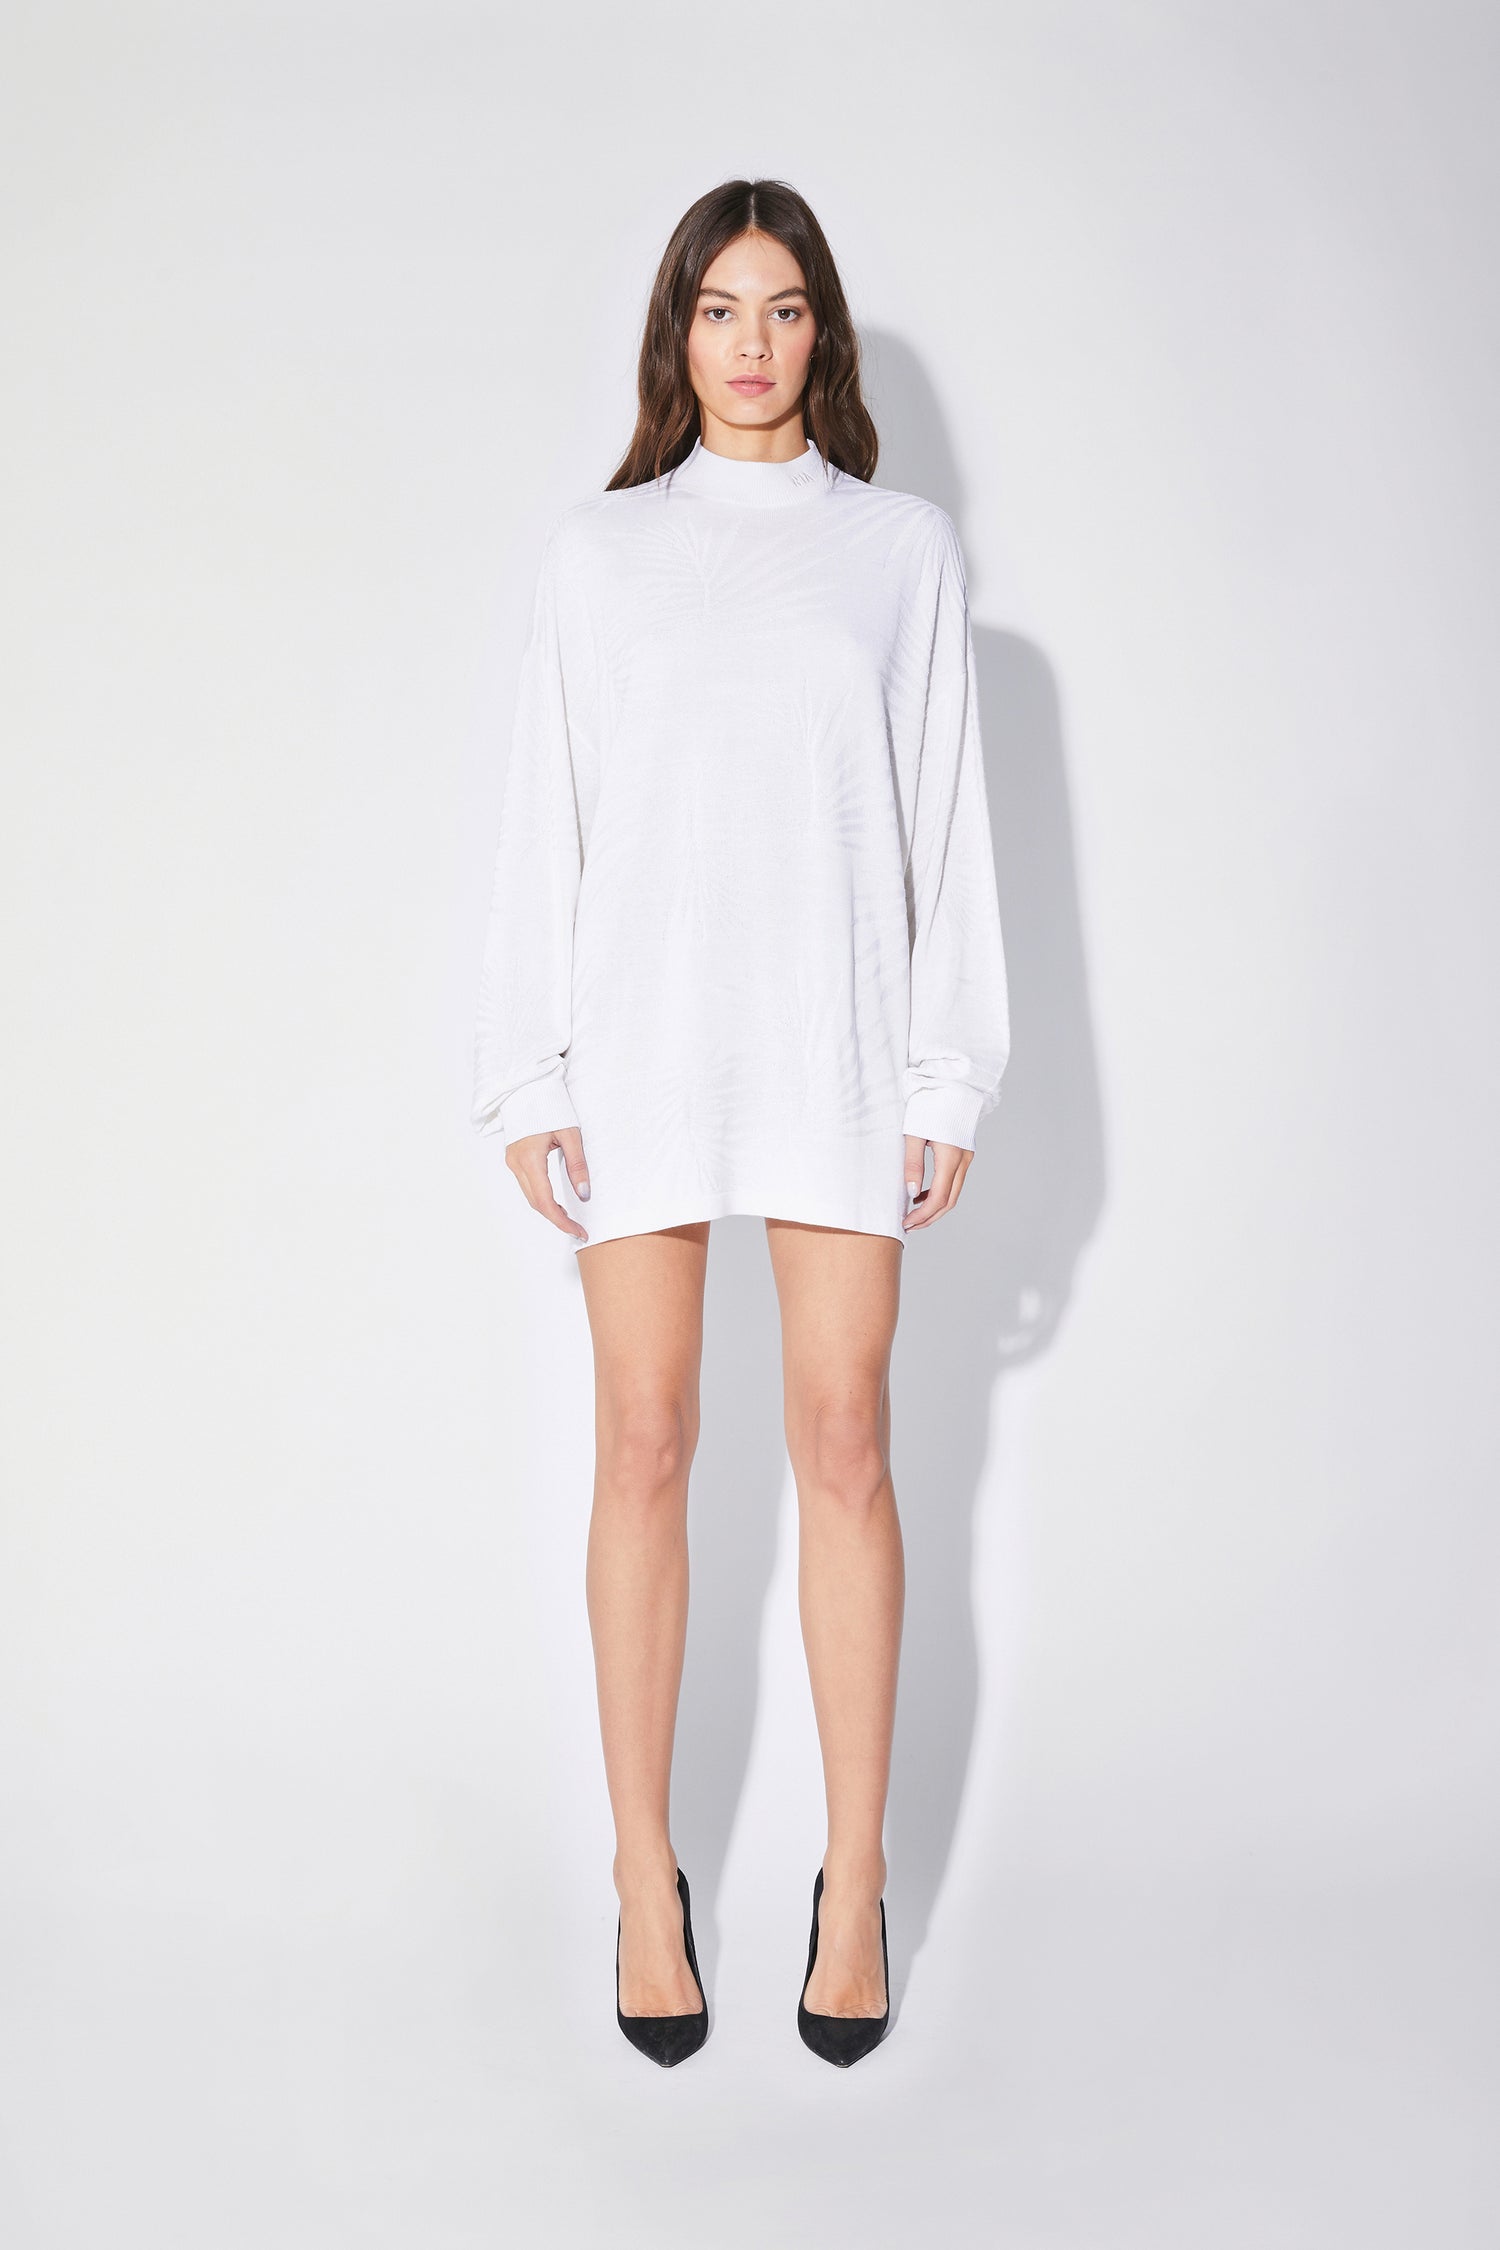 CASSIA DRESS | WHITE TROPICAL